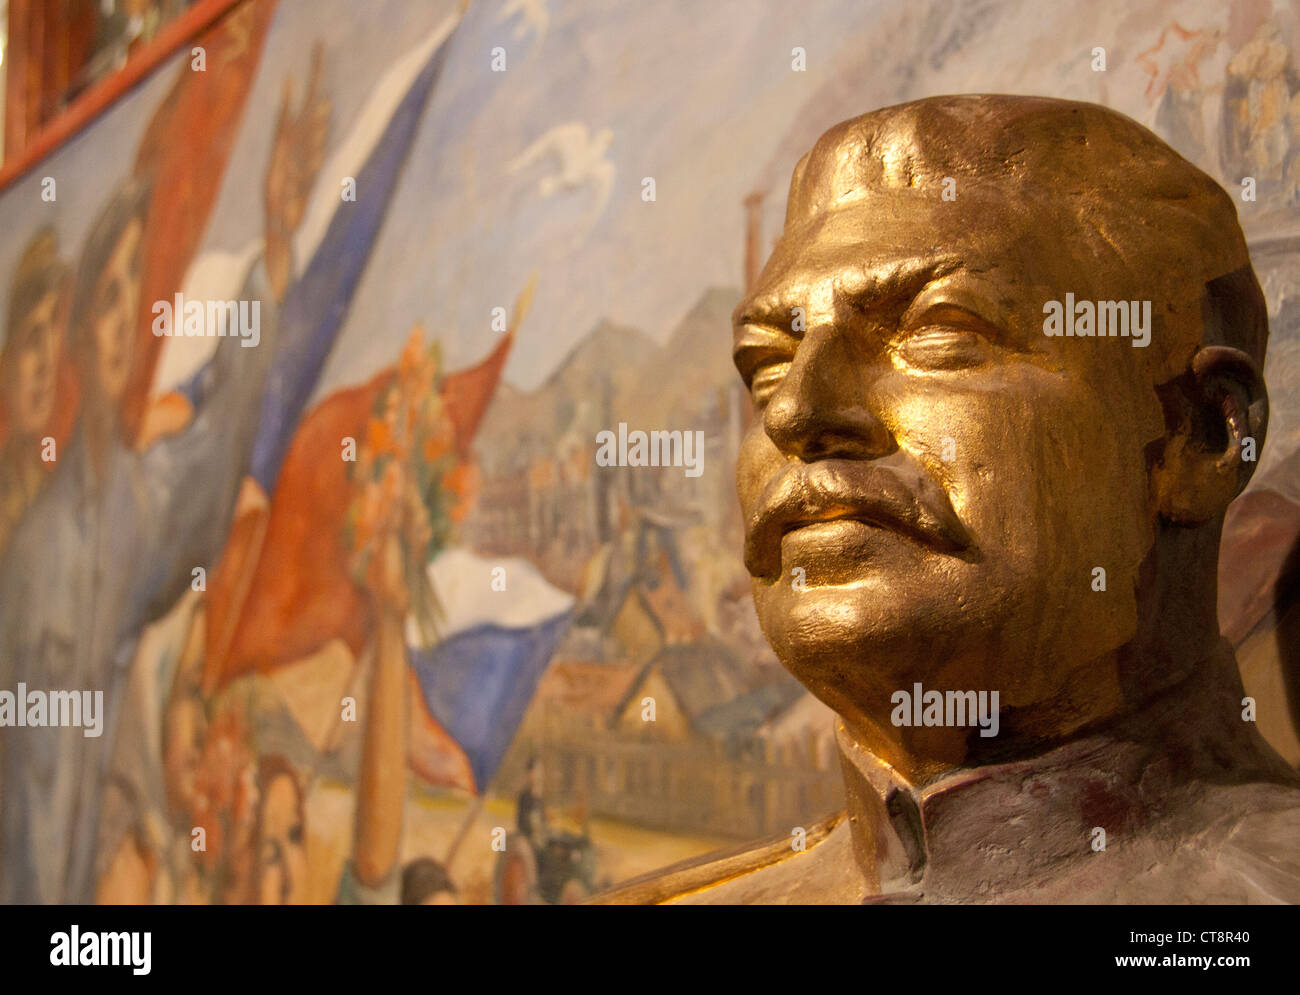 Gold Büste von Josef Stalin mit sozialistisch realistischen Stil Wandbild Museum des Kommunismus, Prag Tschechische Republik Europa EU Stockfoto